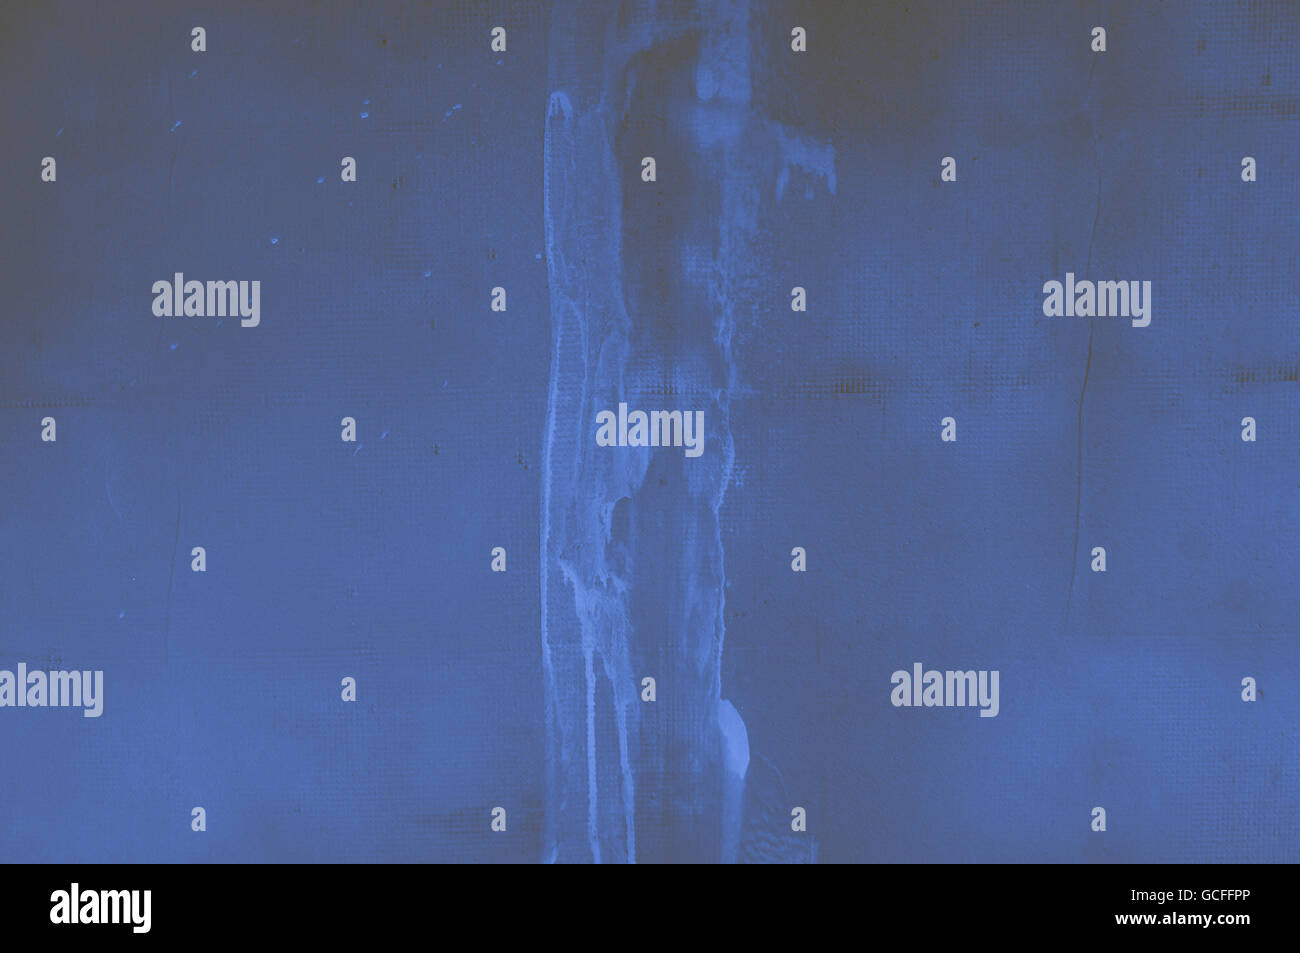 Brun jaunâtre bleu indigo avec mur de béton rugueux, parures en stuc avec matrix comme grille de points, rayures Banque D'Images